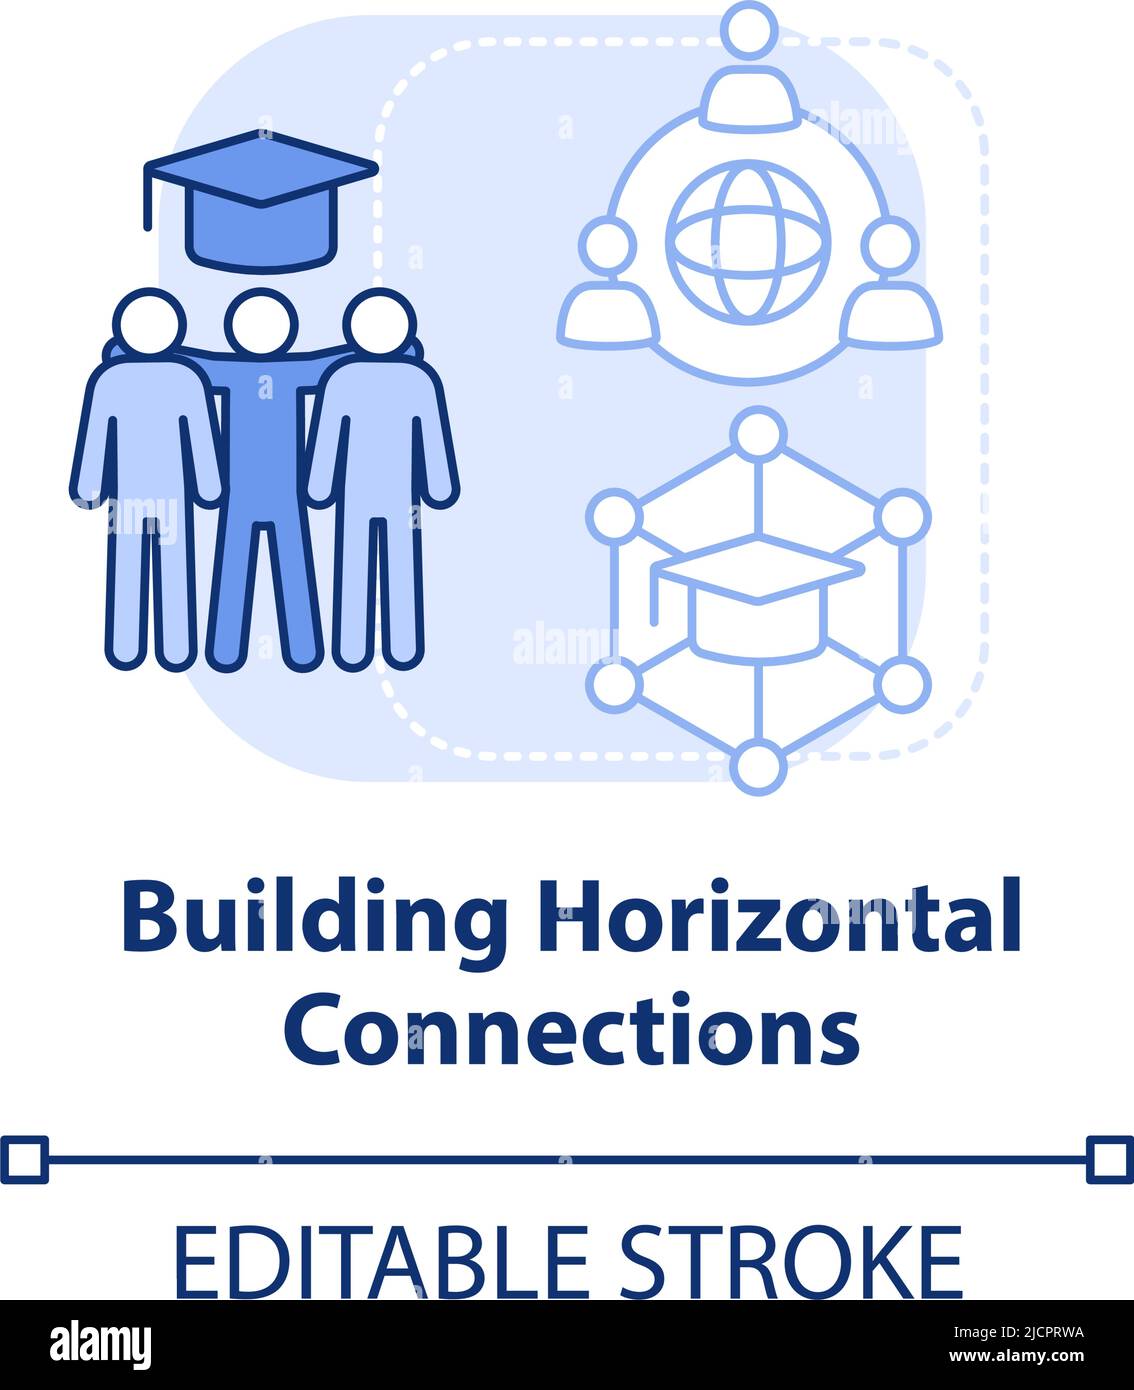 Construyendo conexiones horizontales icono de concepto azul claro Ilustración del Vector